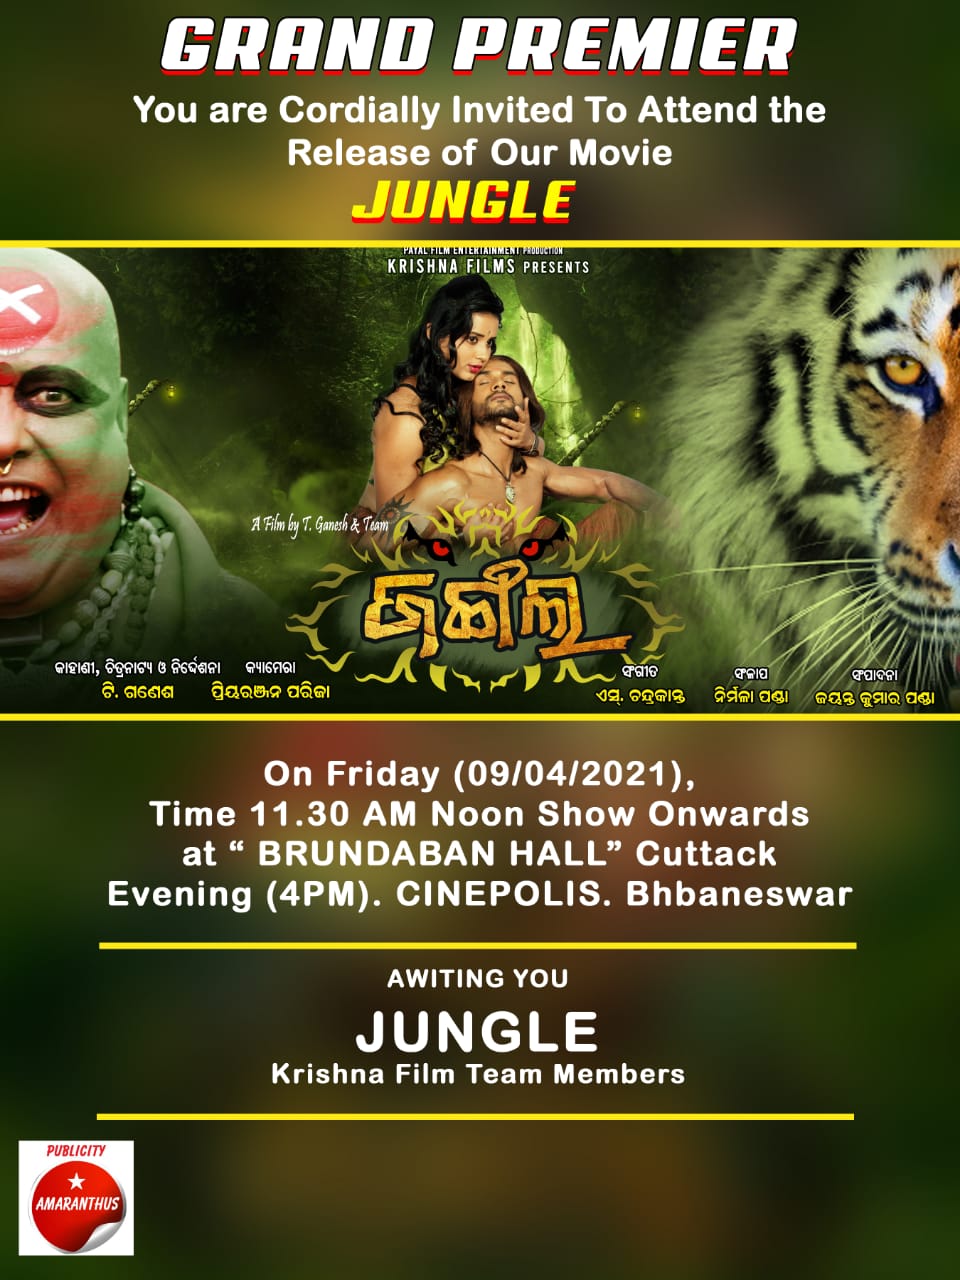 'Jungle' movie premiere invitation